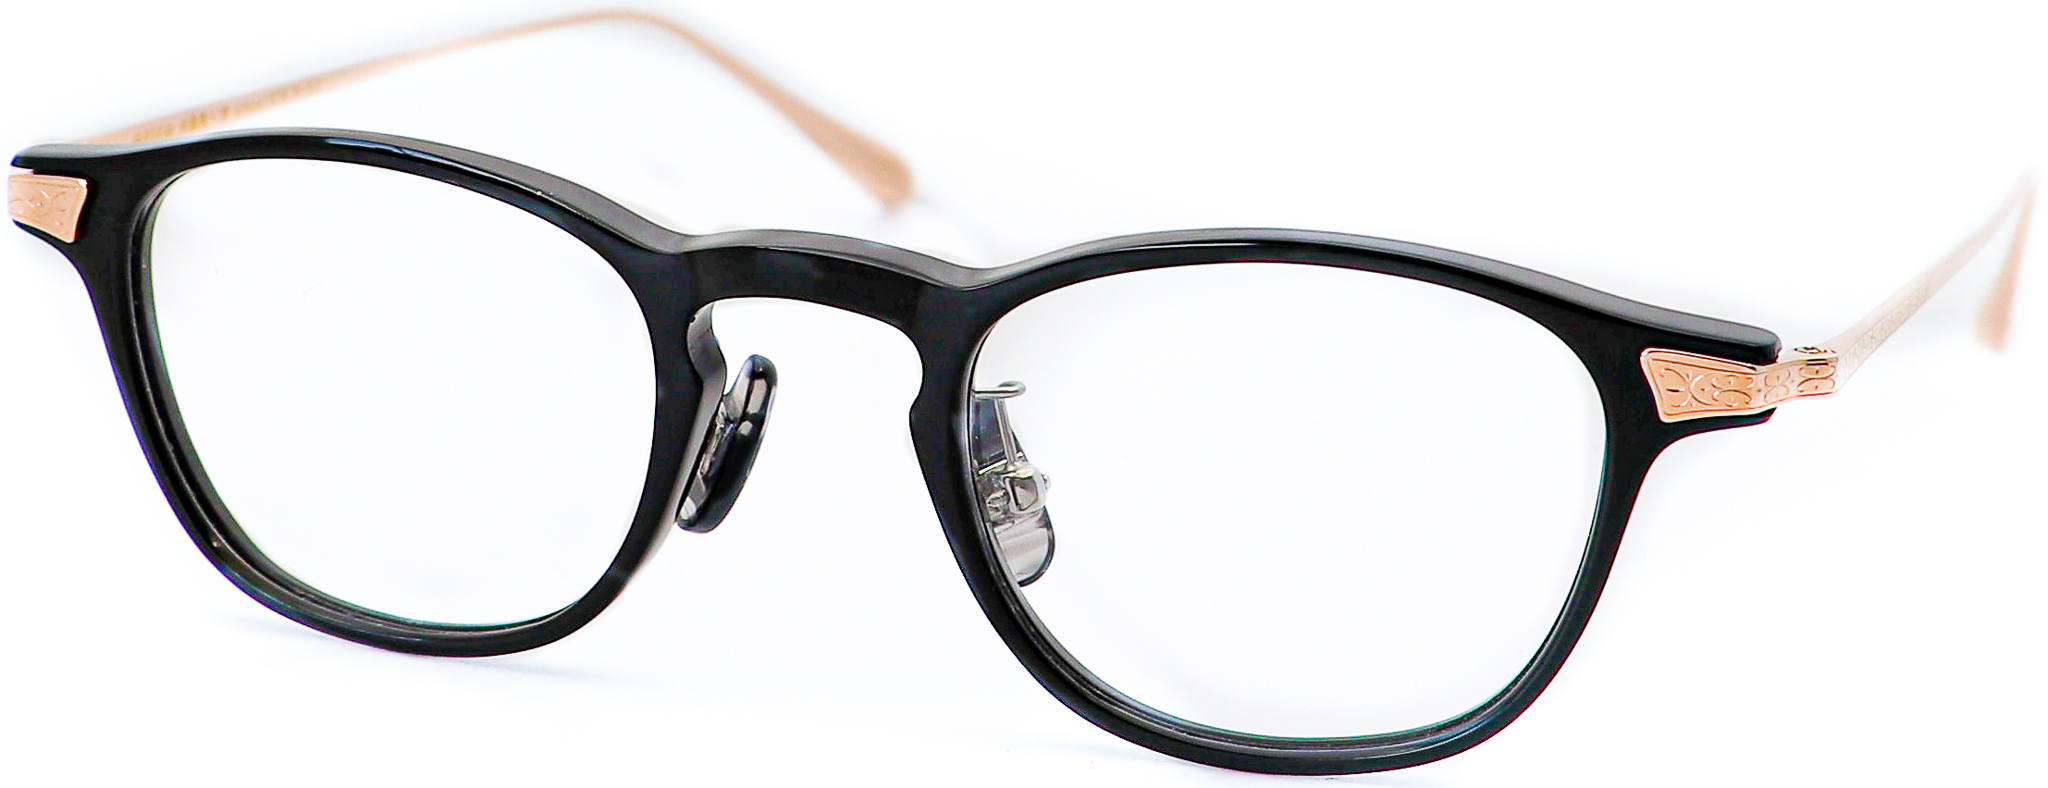 眼鏡のカラータイプC-1 Black/RoseGold